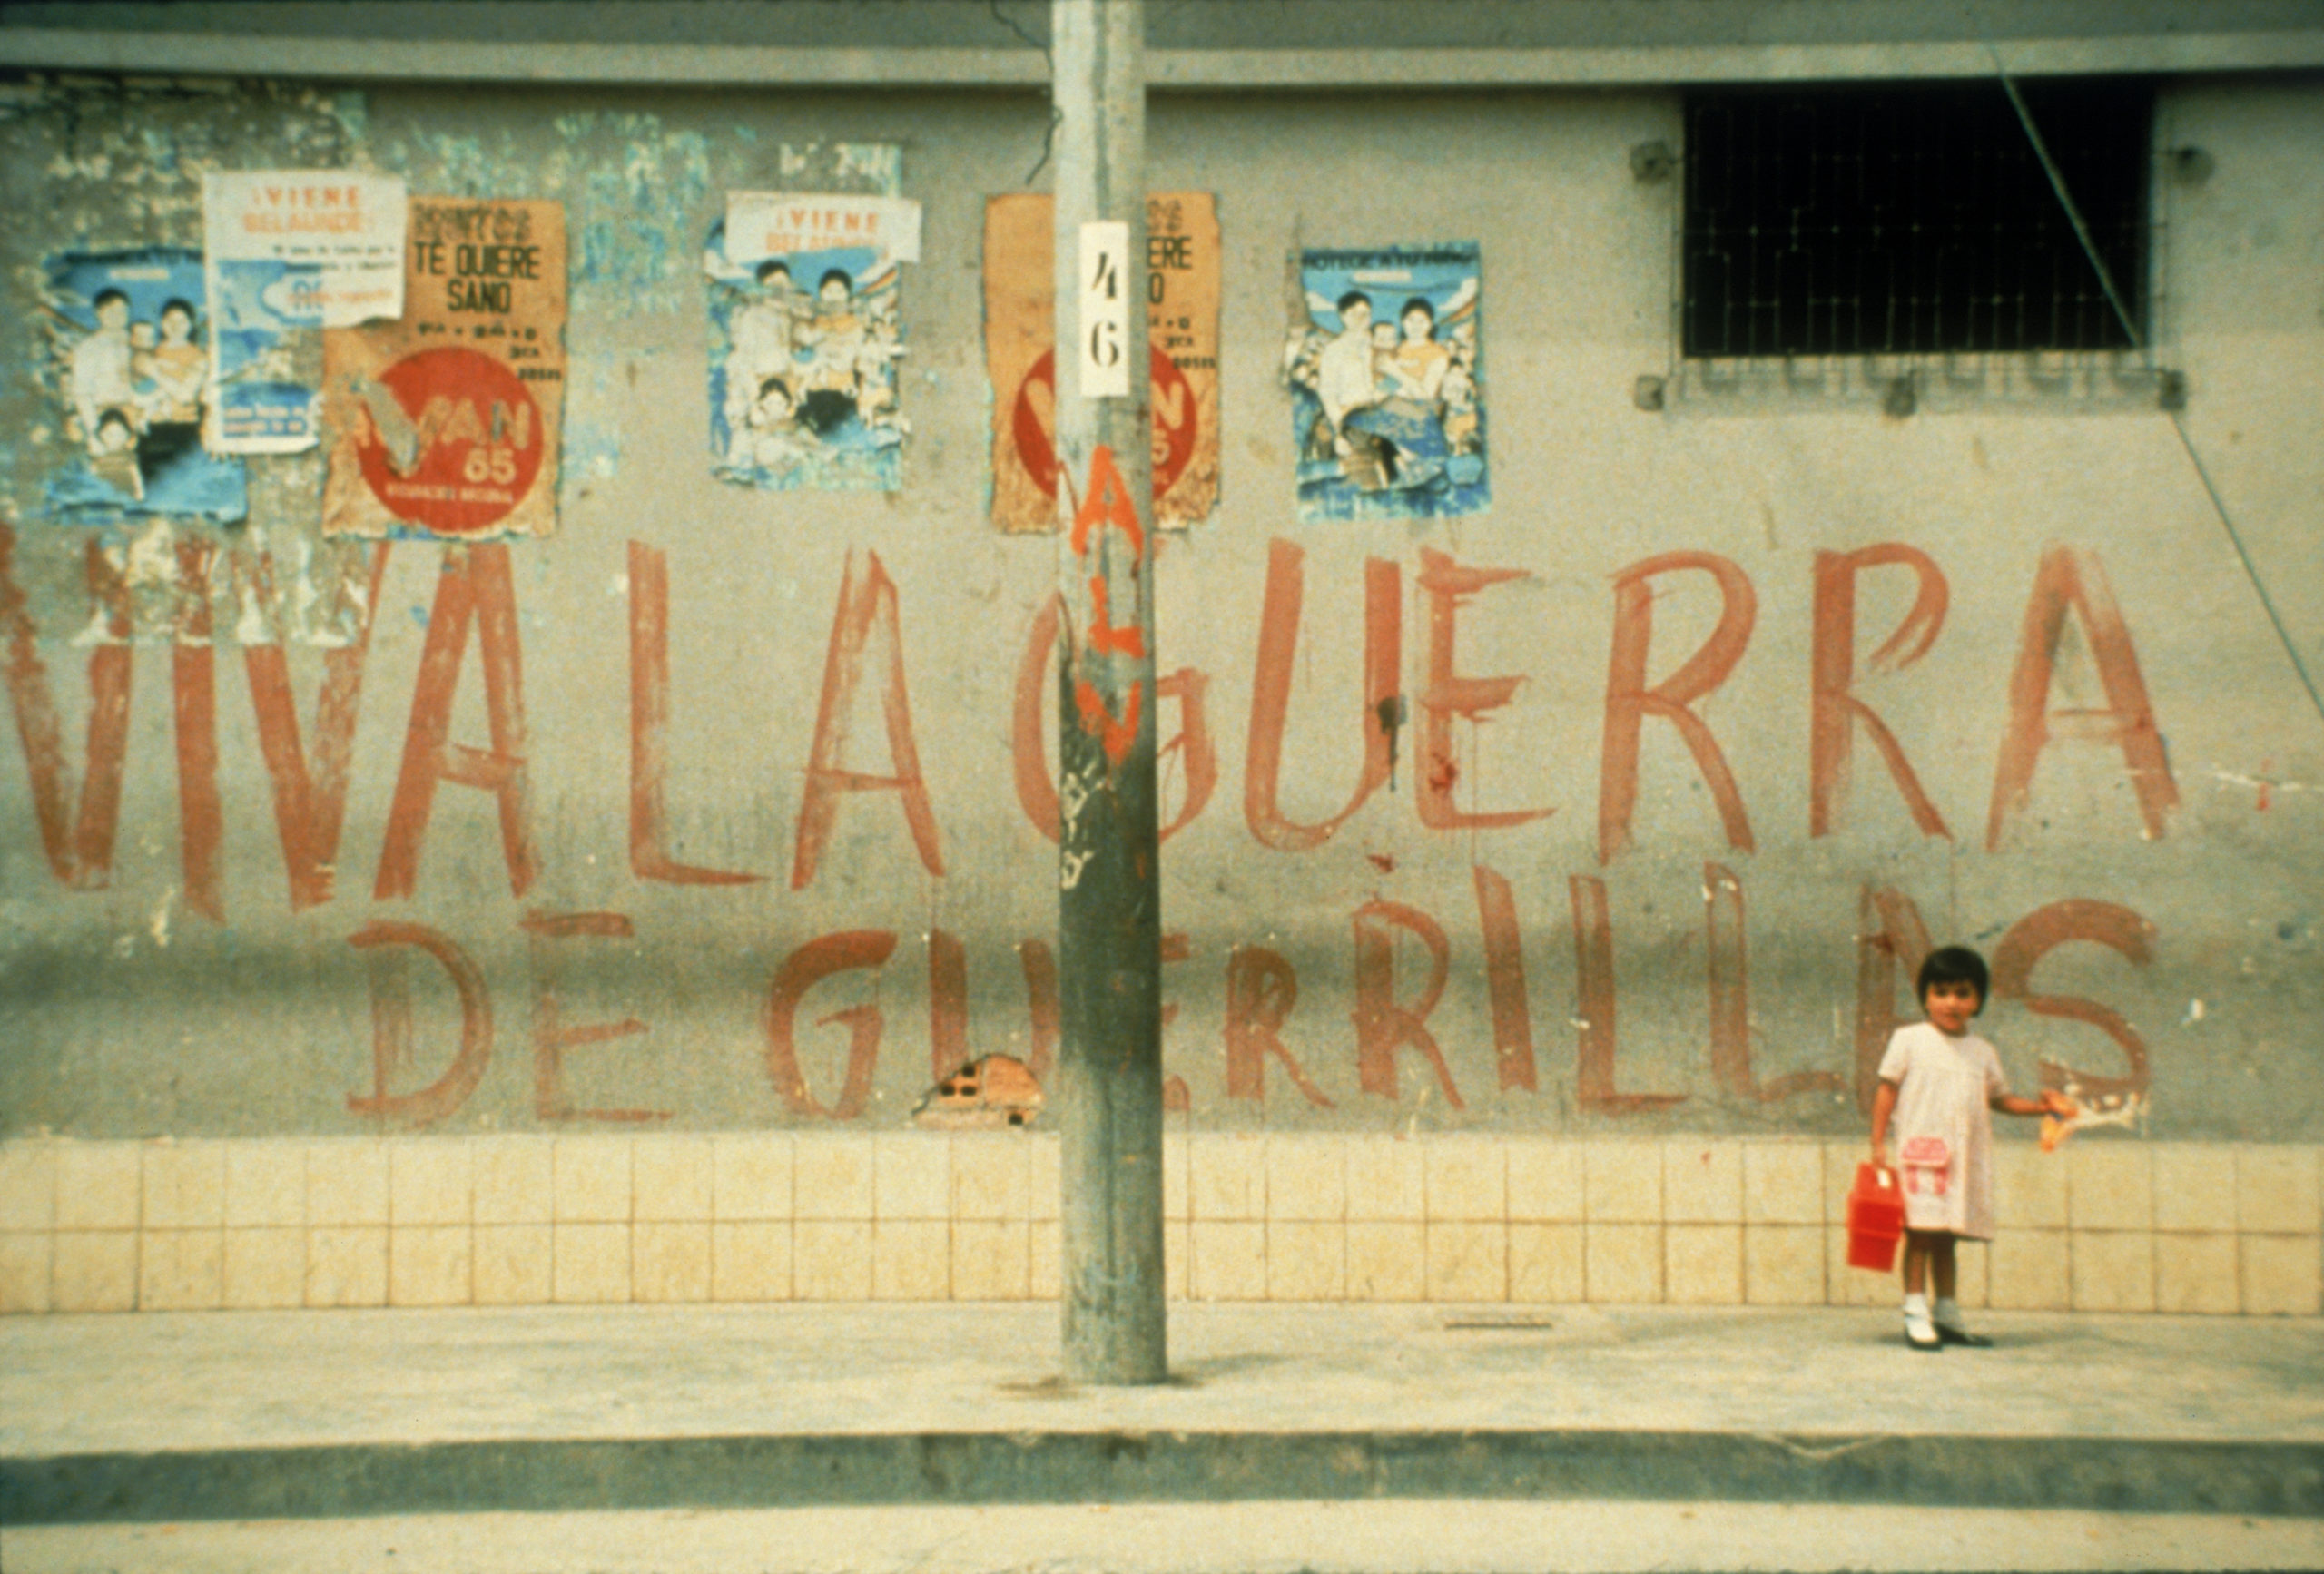 Kadr filmu "Powaqqatsi" przedstawiający małą dziewczynkę stojącą na chodniku, za nią jest szara ściana, a na niej namalowany czerwoną farbą napis